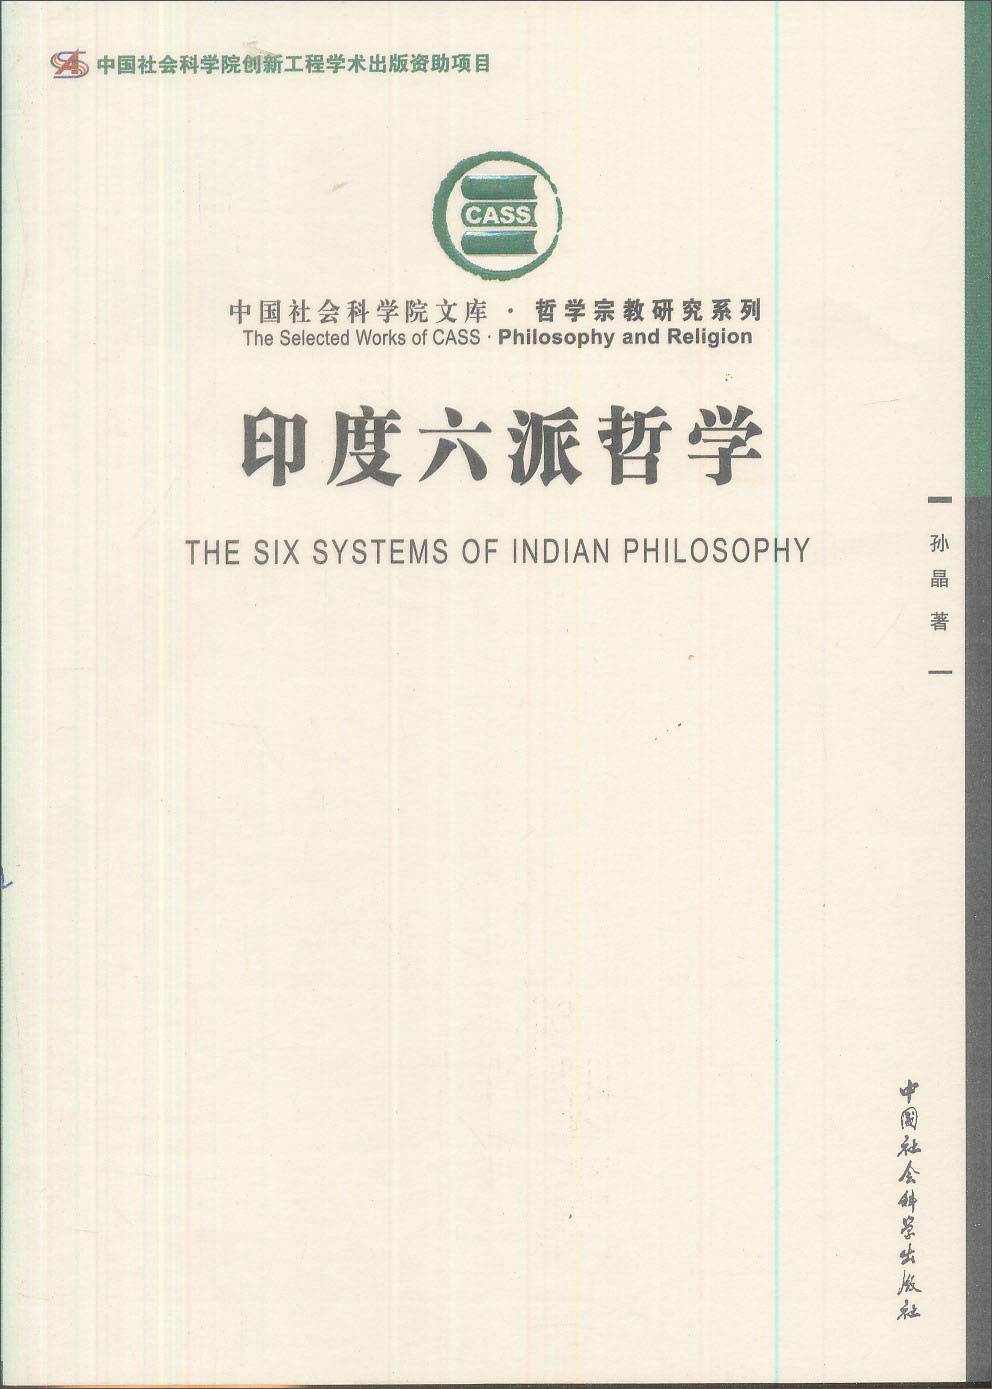 中国社会科学院创新工程学术出版资助项目：印度六派哲学